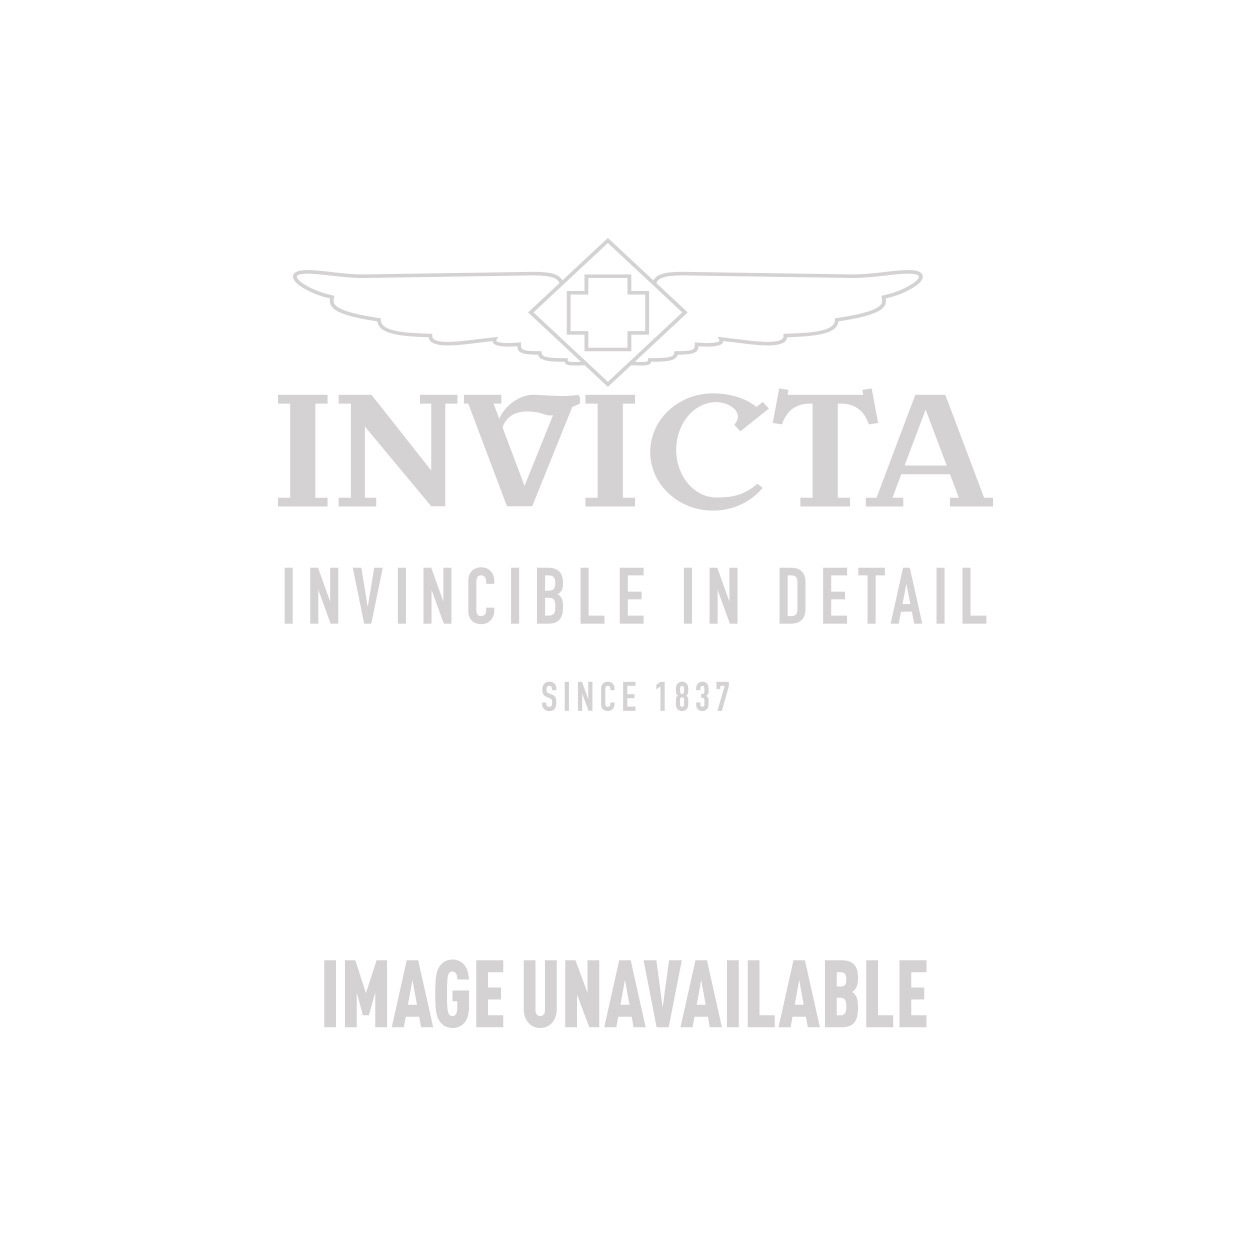 Invicta Subaqua Mens Quartz 55.45mm Gold, Stainless Steel Case Blue Dial - Model 26726